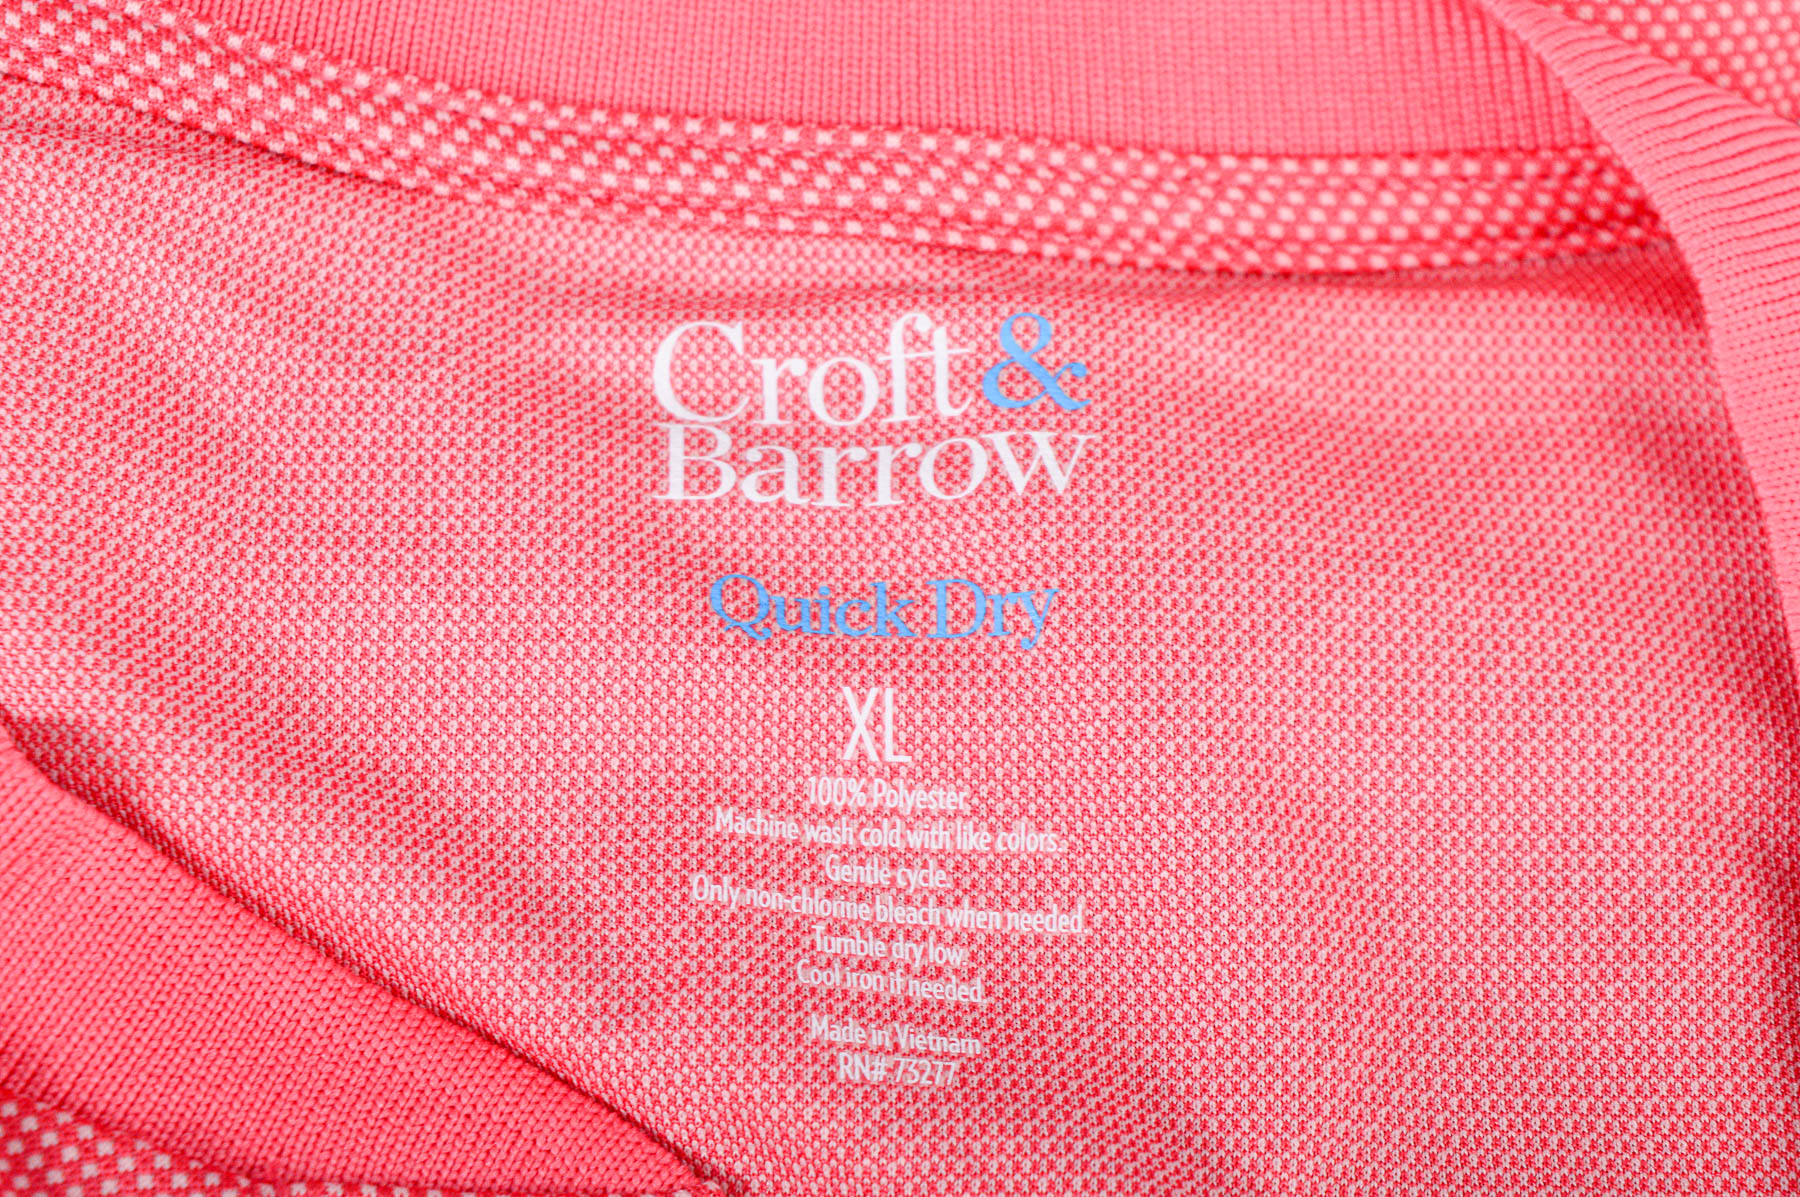 Ανδρικό μπλουζάκι - Croft & Barrow - 2